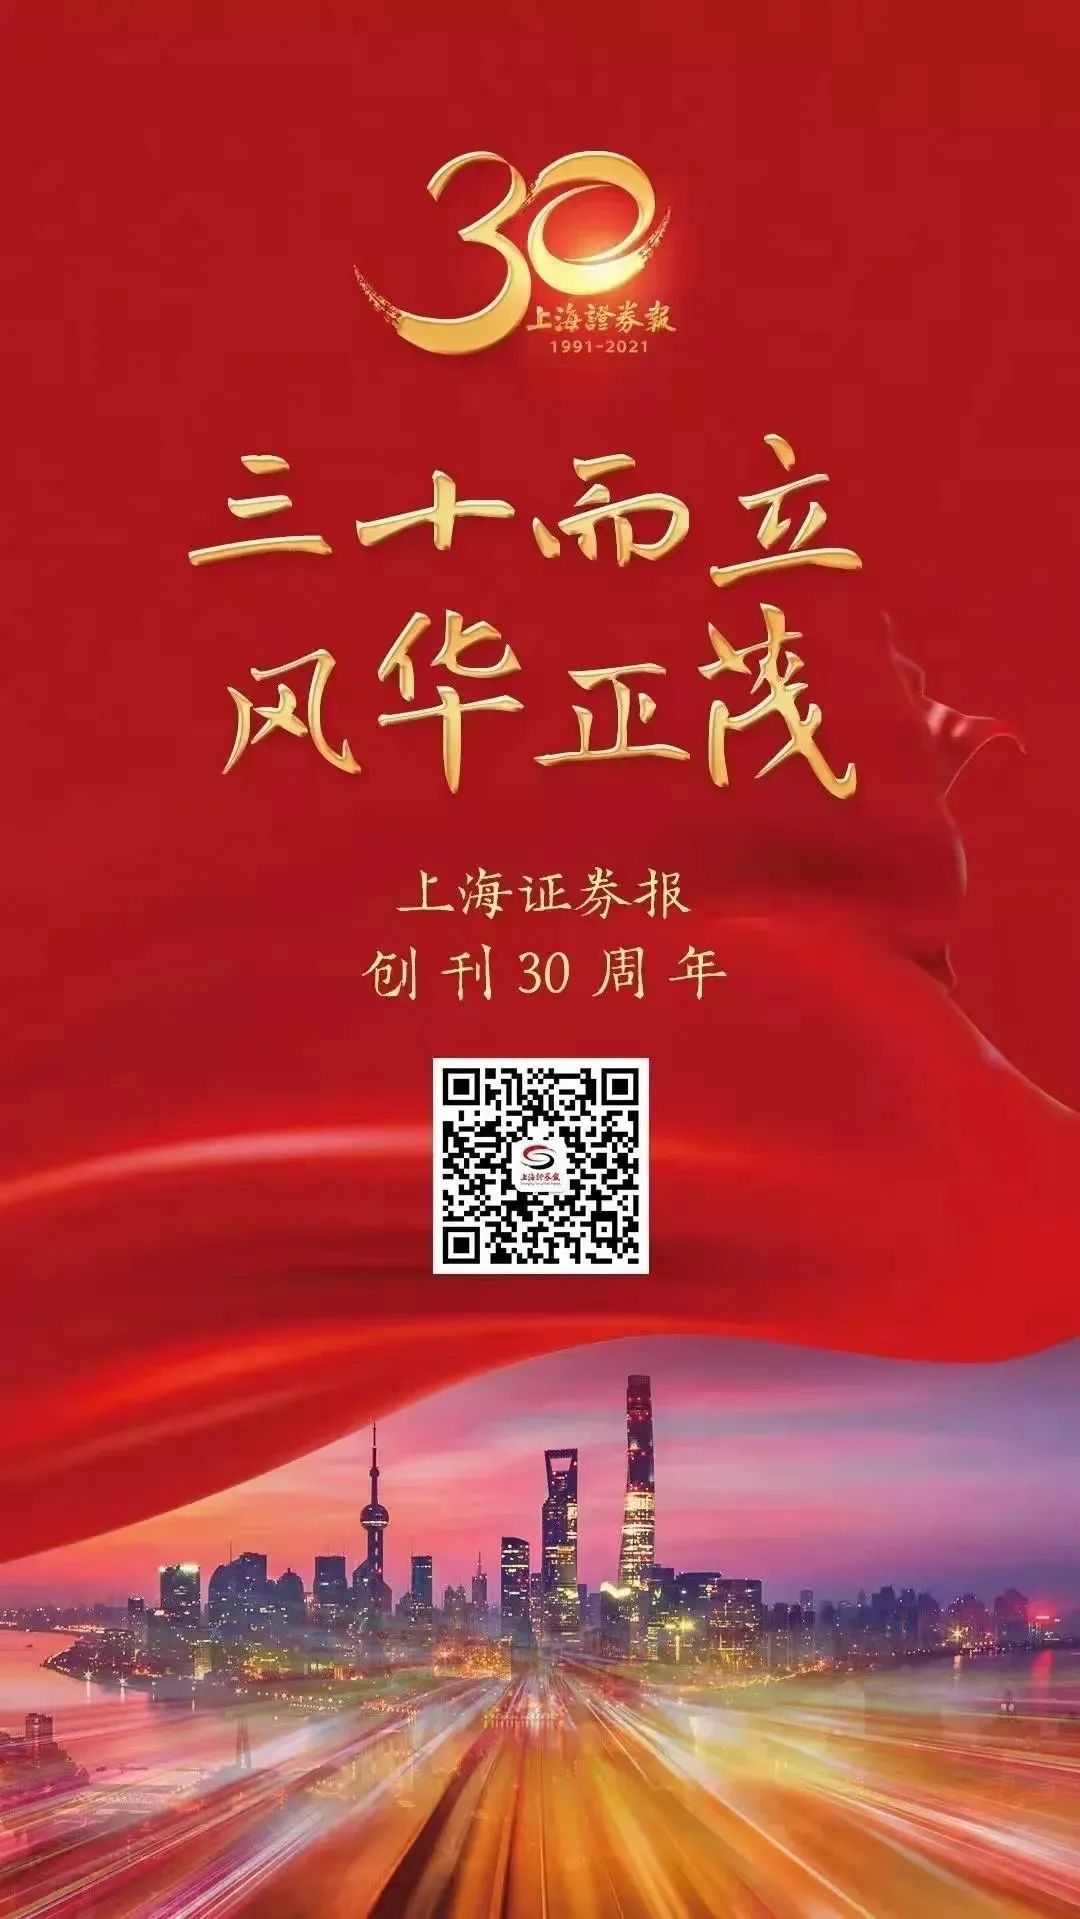 热烈祝贺上海证券报创刊30周年！